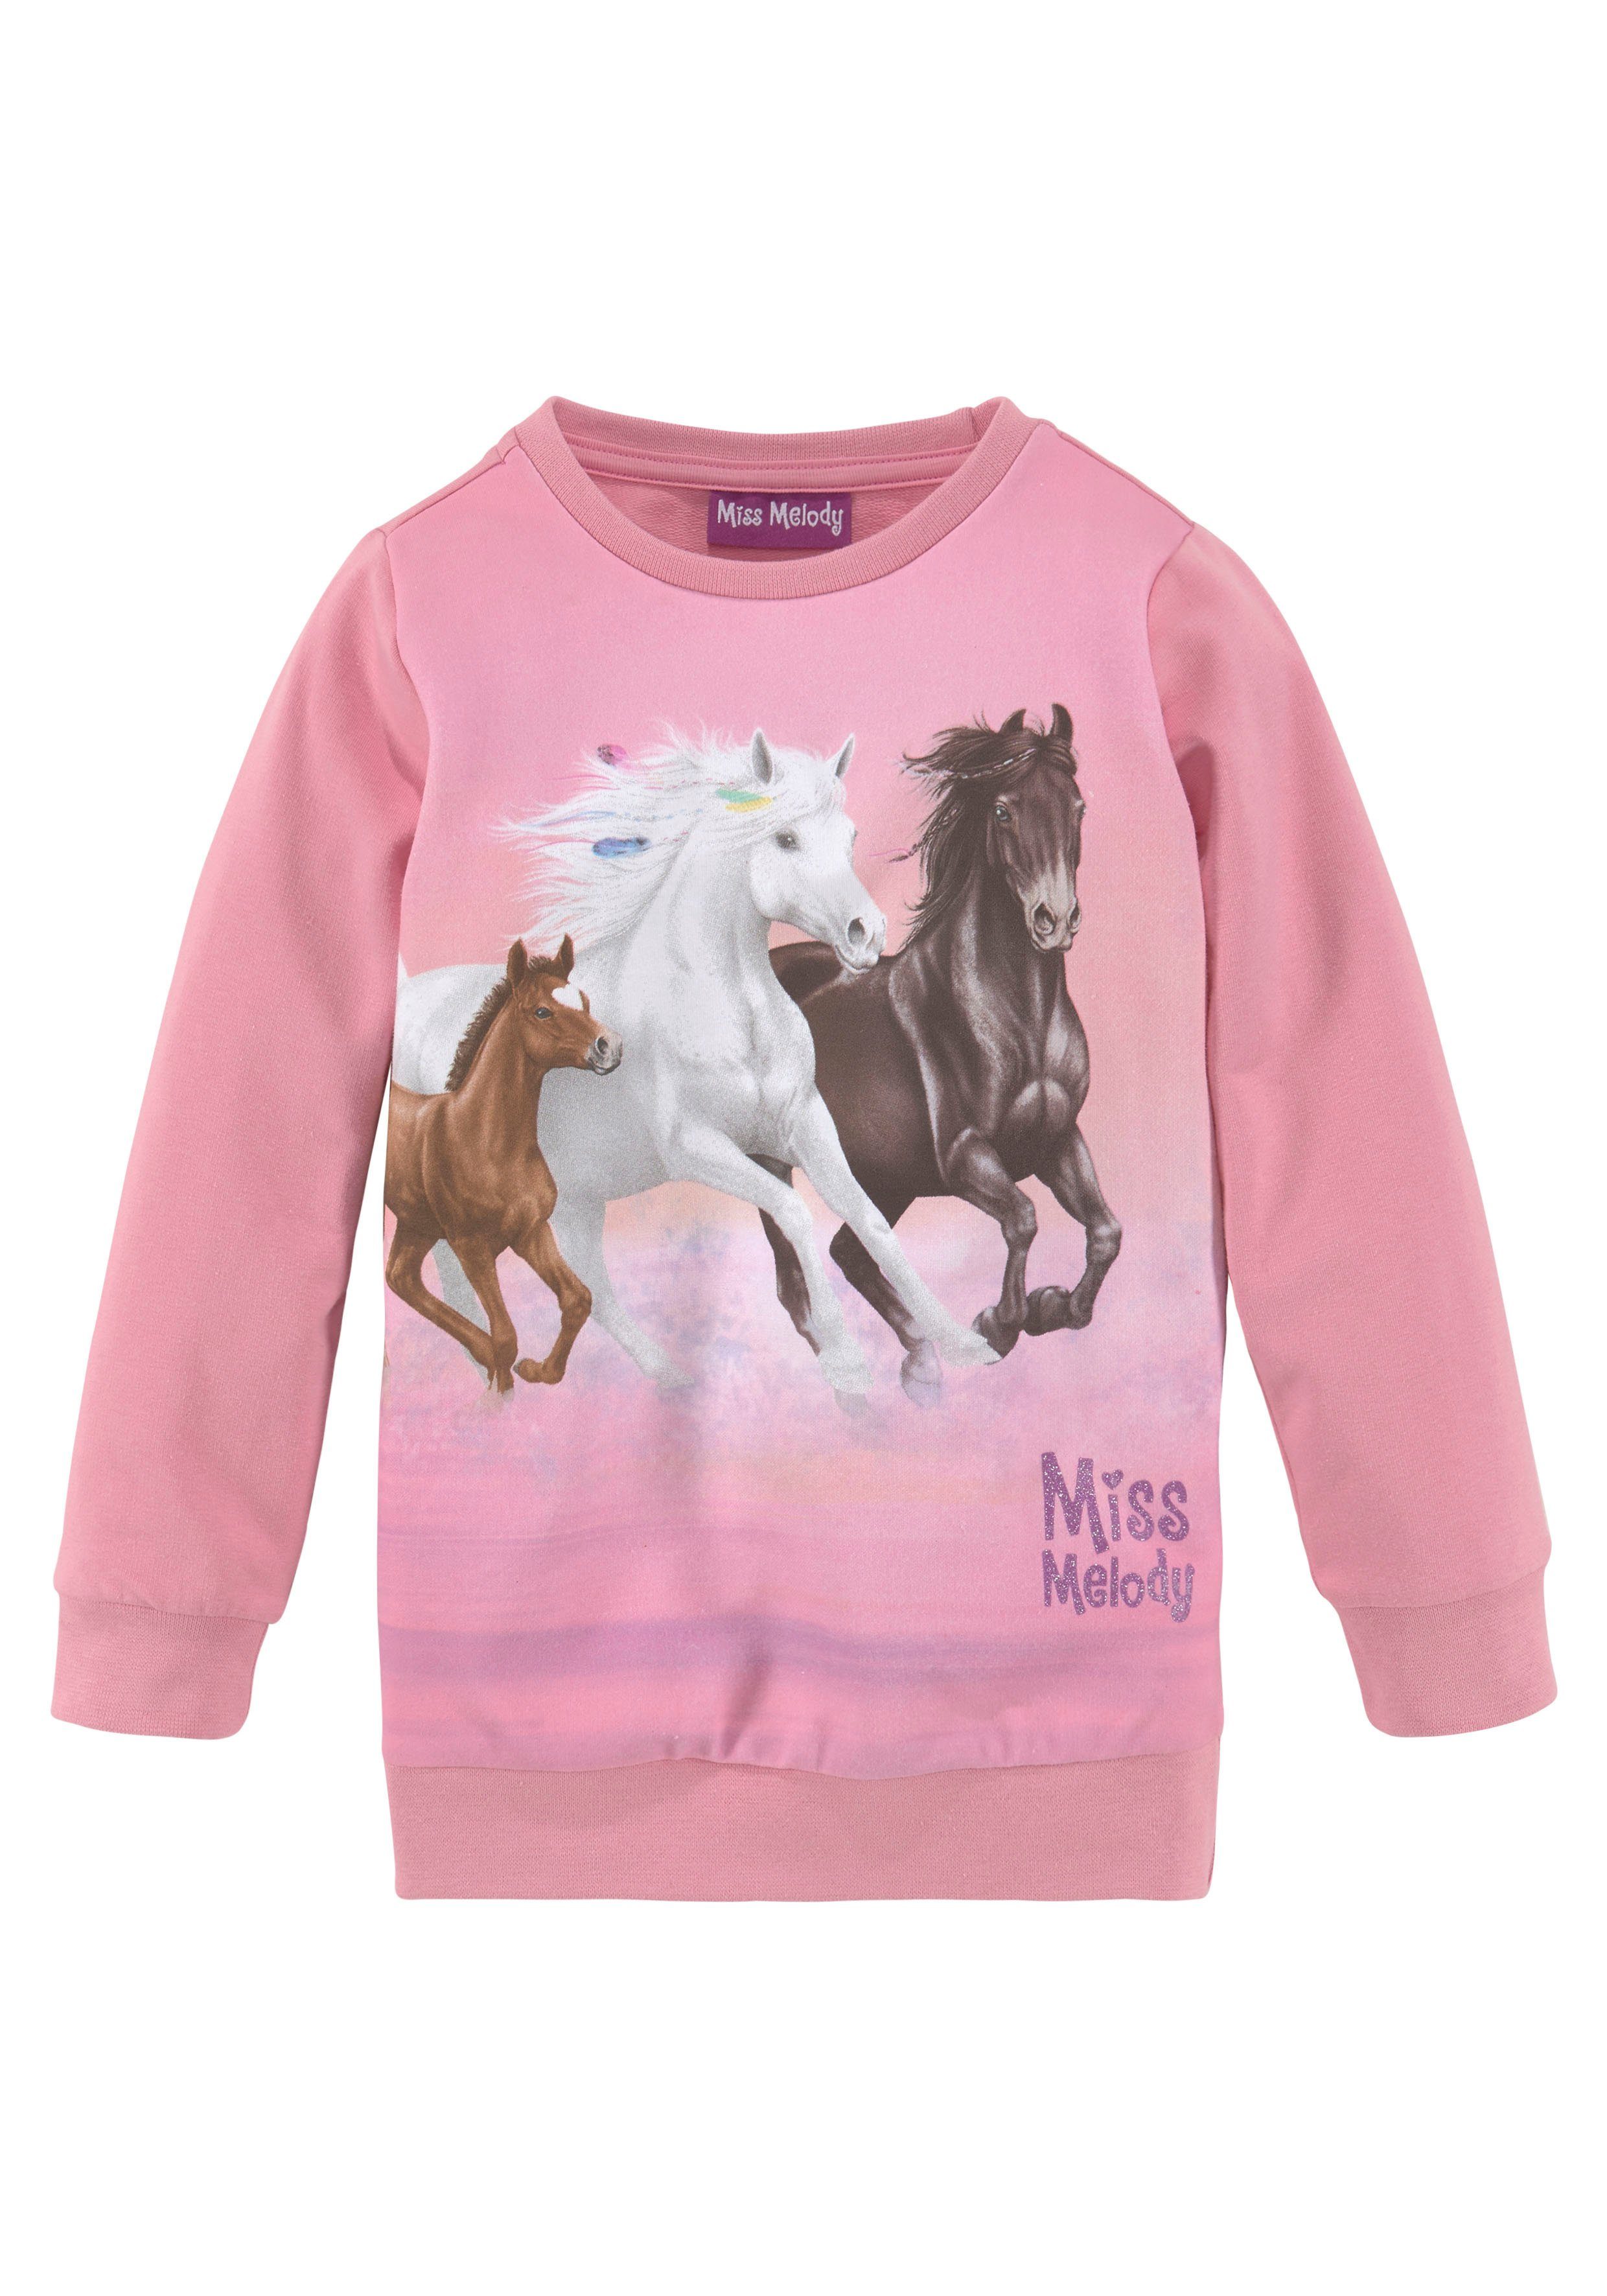 Pferdefreunde Melody Miss Longsweatshirt für